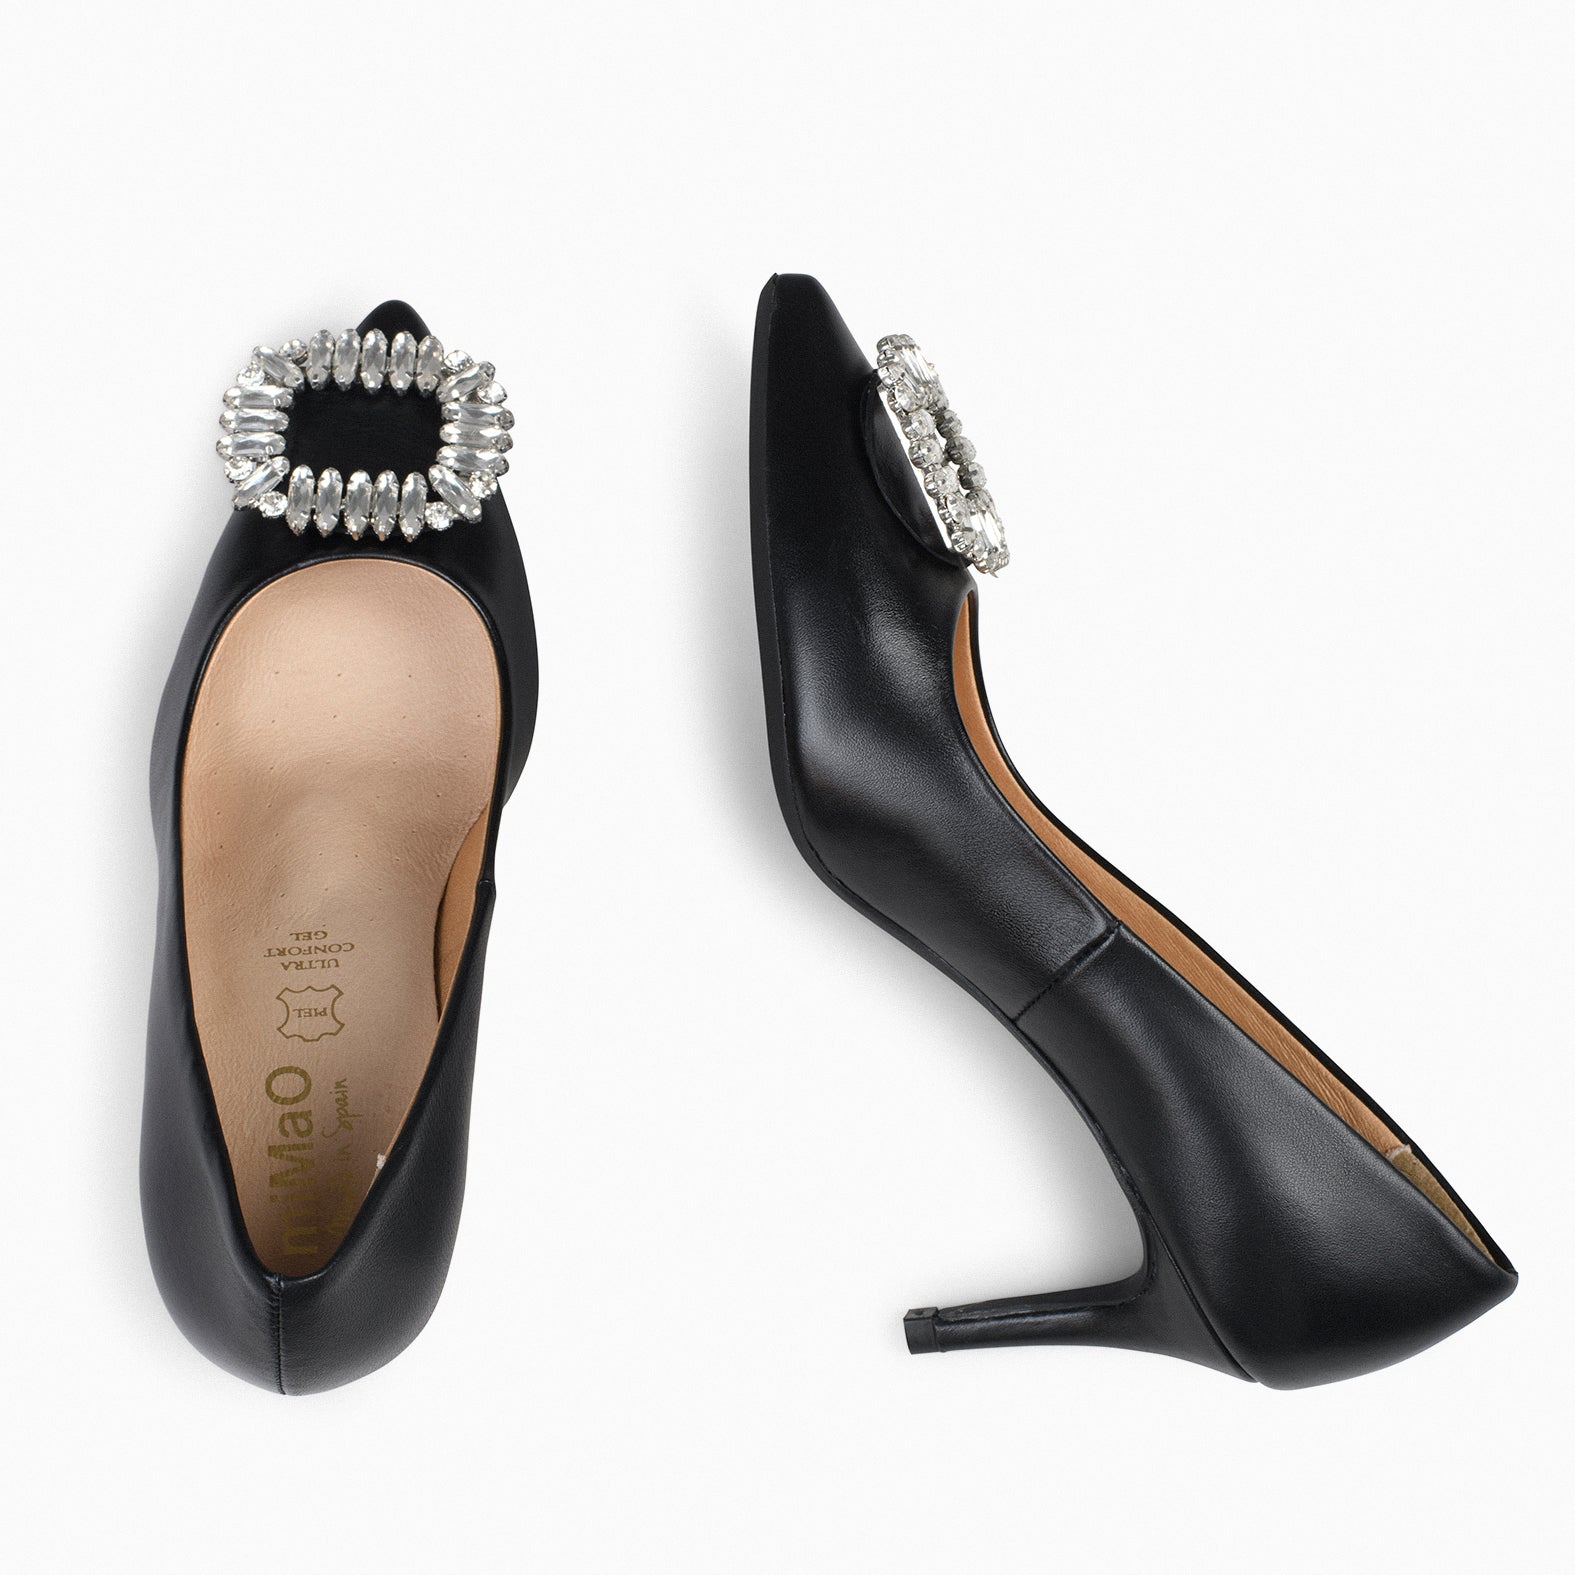 ELLA – BLACK stiletto heels with brooch